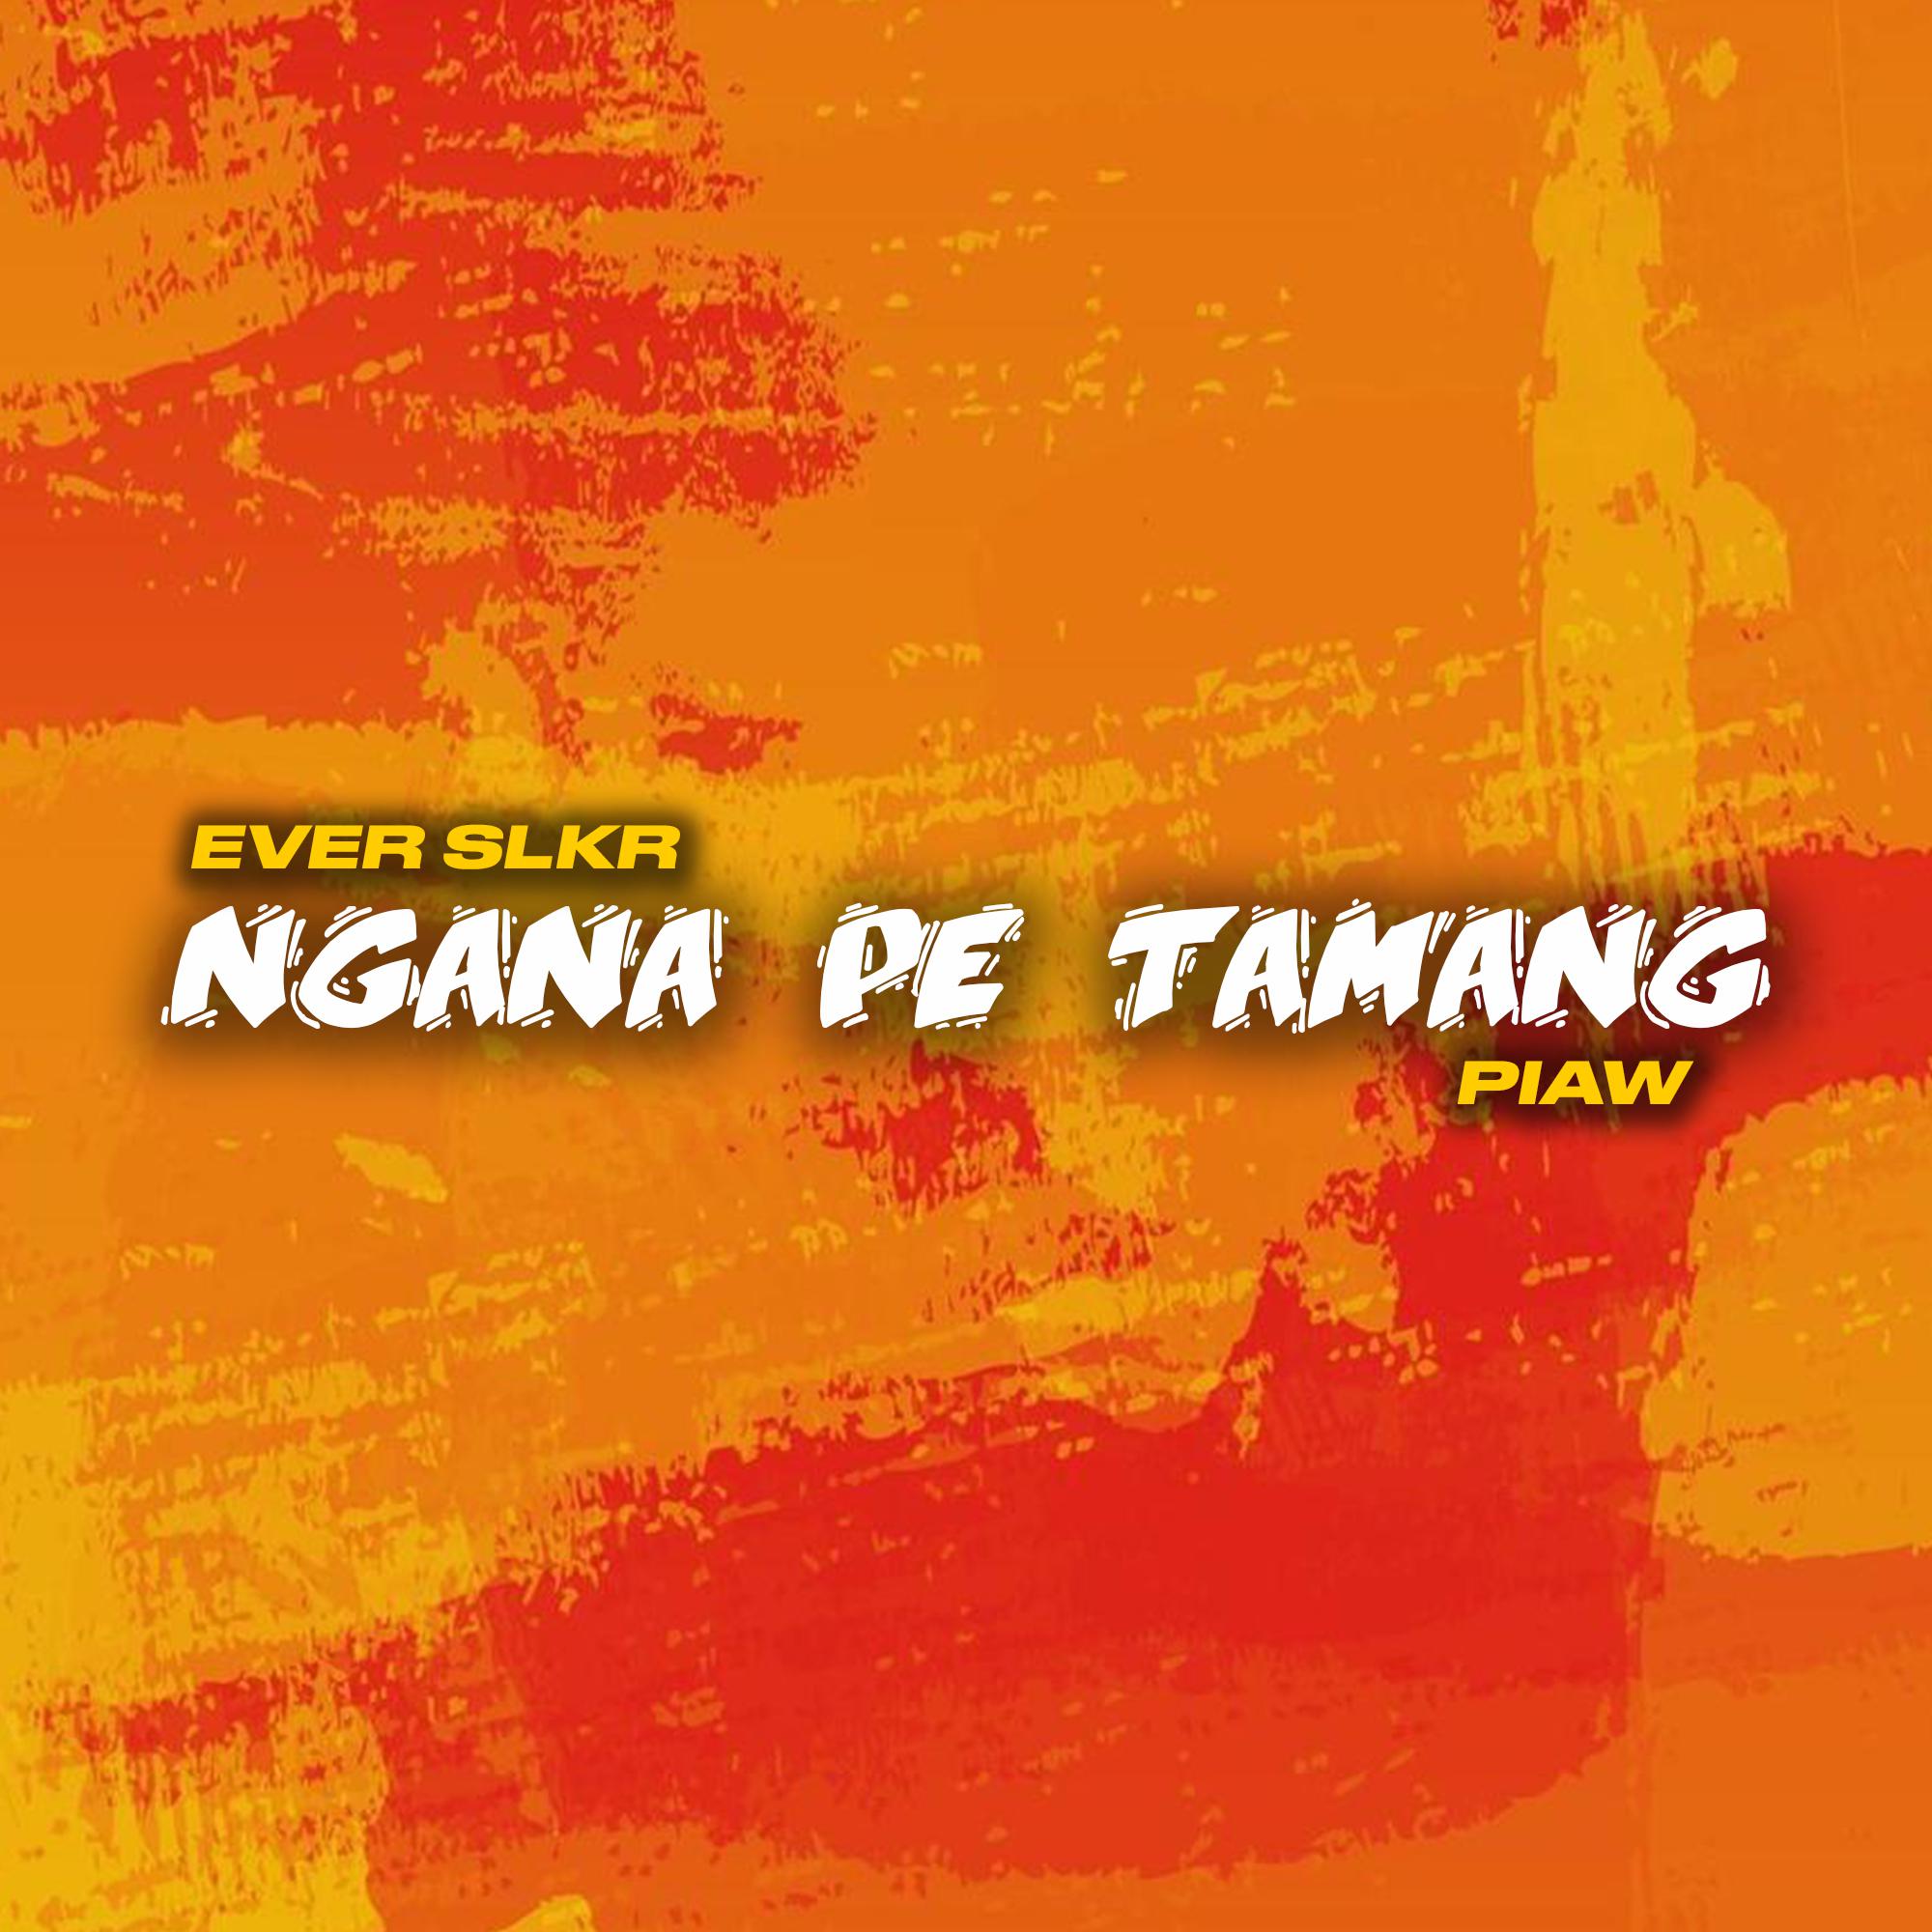 Ever Slkr - Ngana Pe Tamang